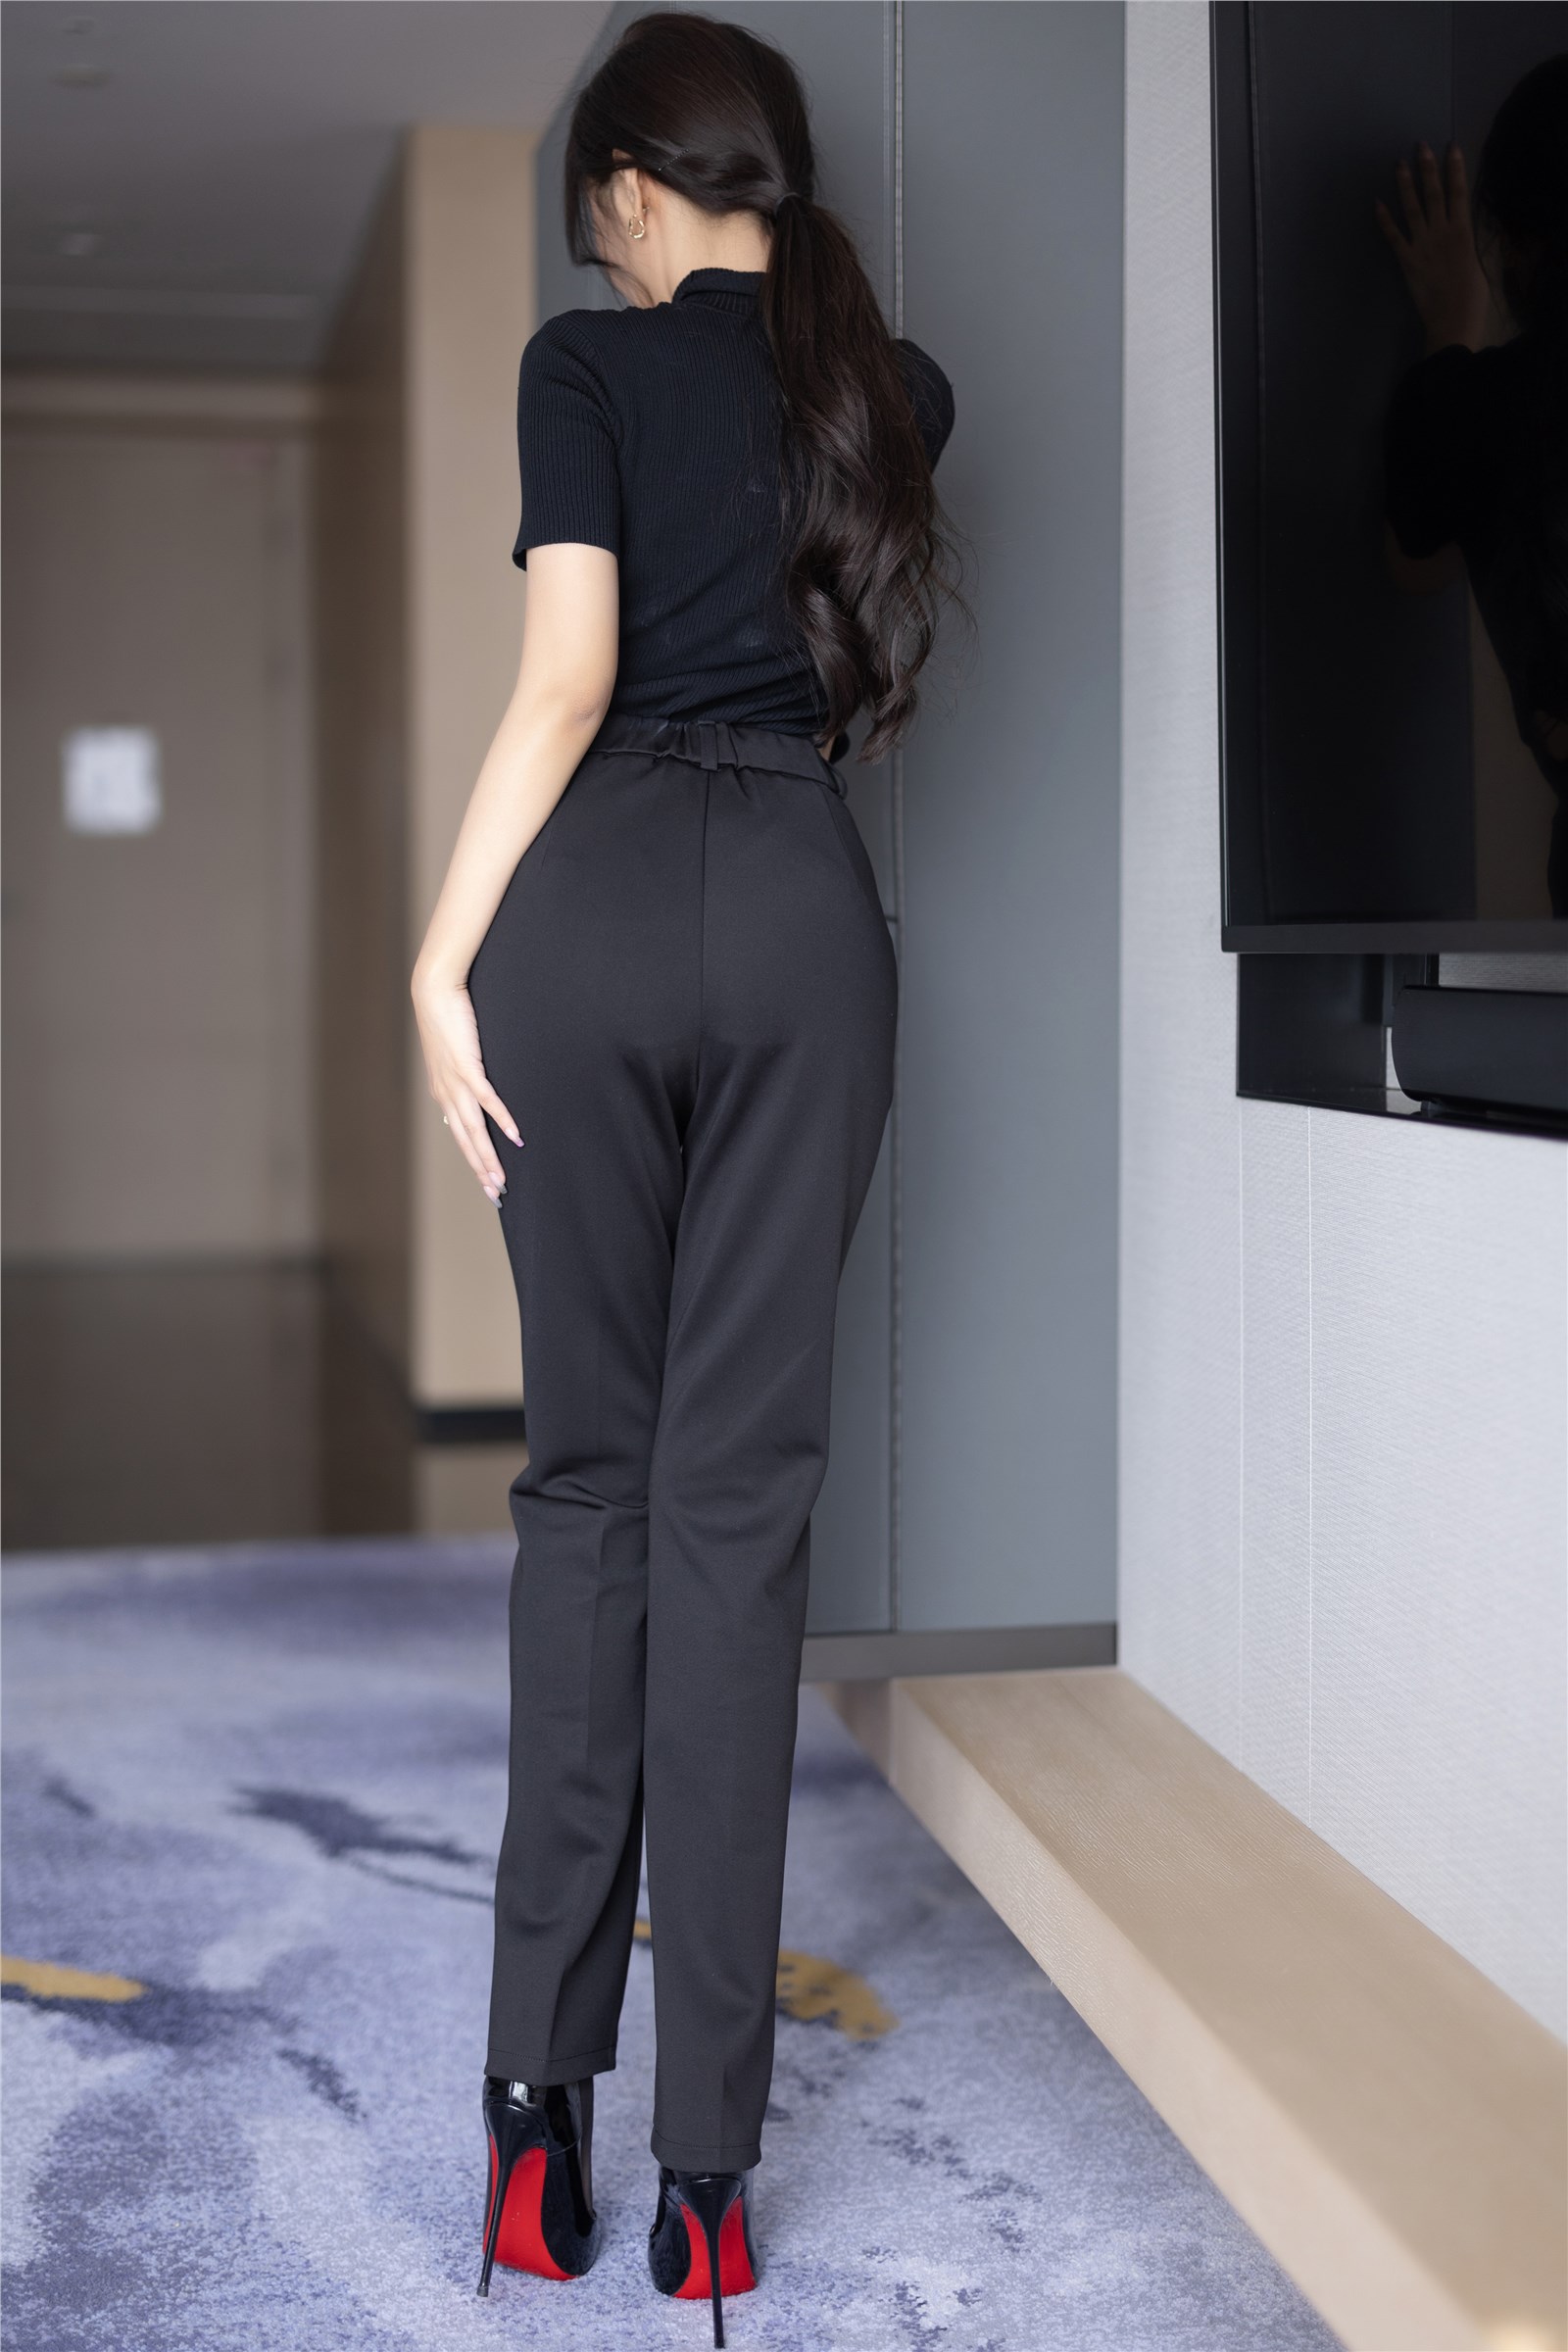 Wang Xinyao Yanni - NO.012 Buy watermark free black suit with pants, Gao Qilan(43)